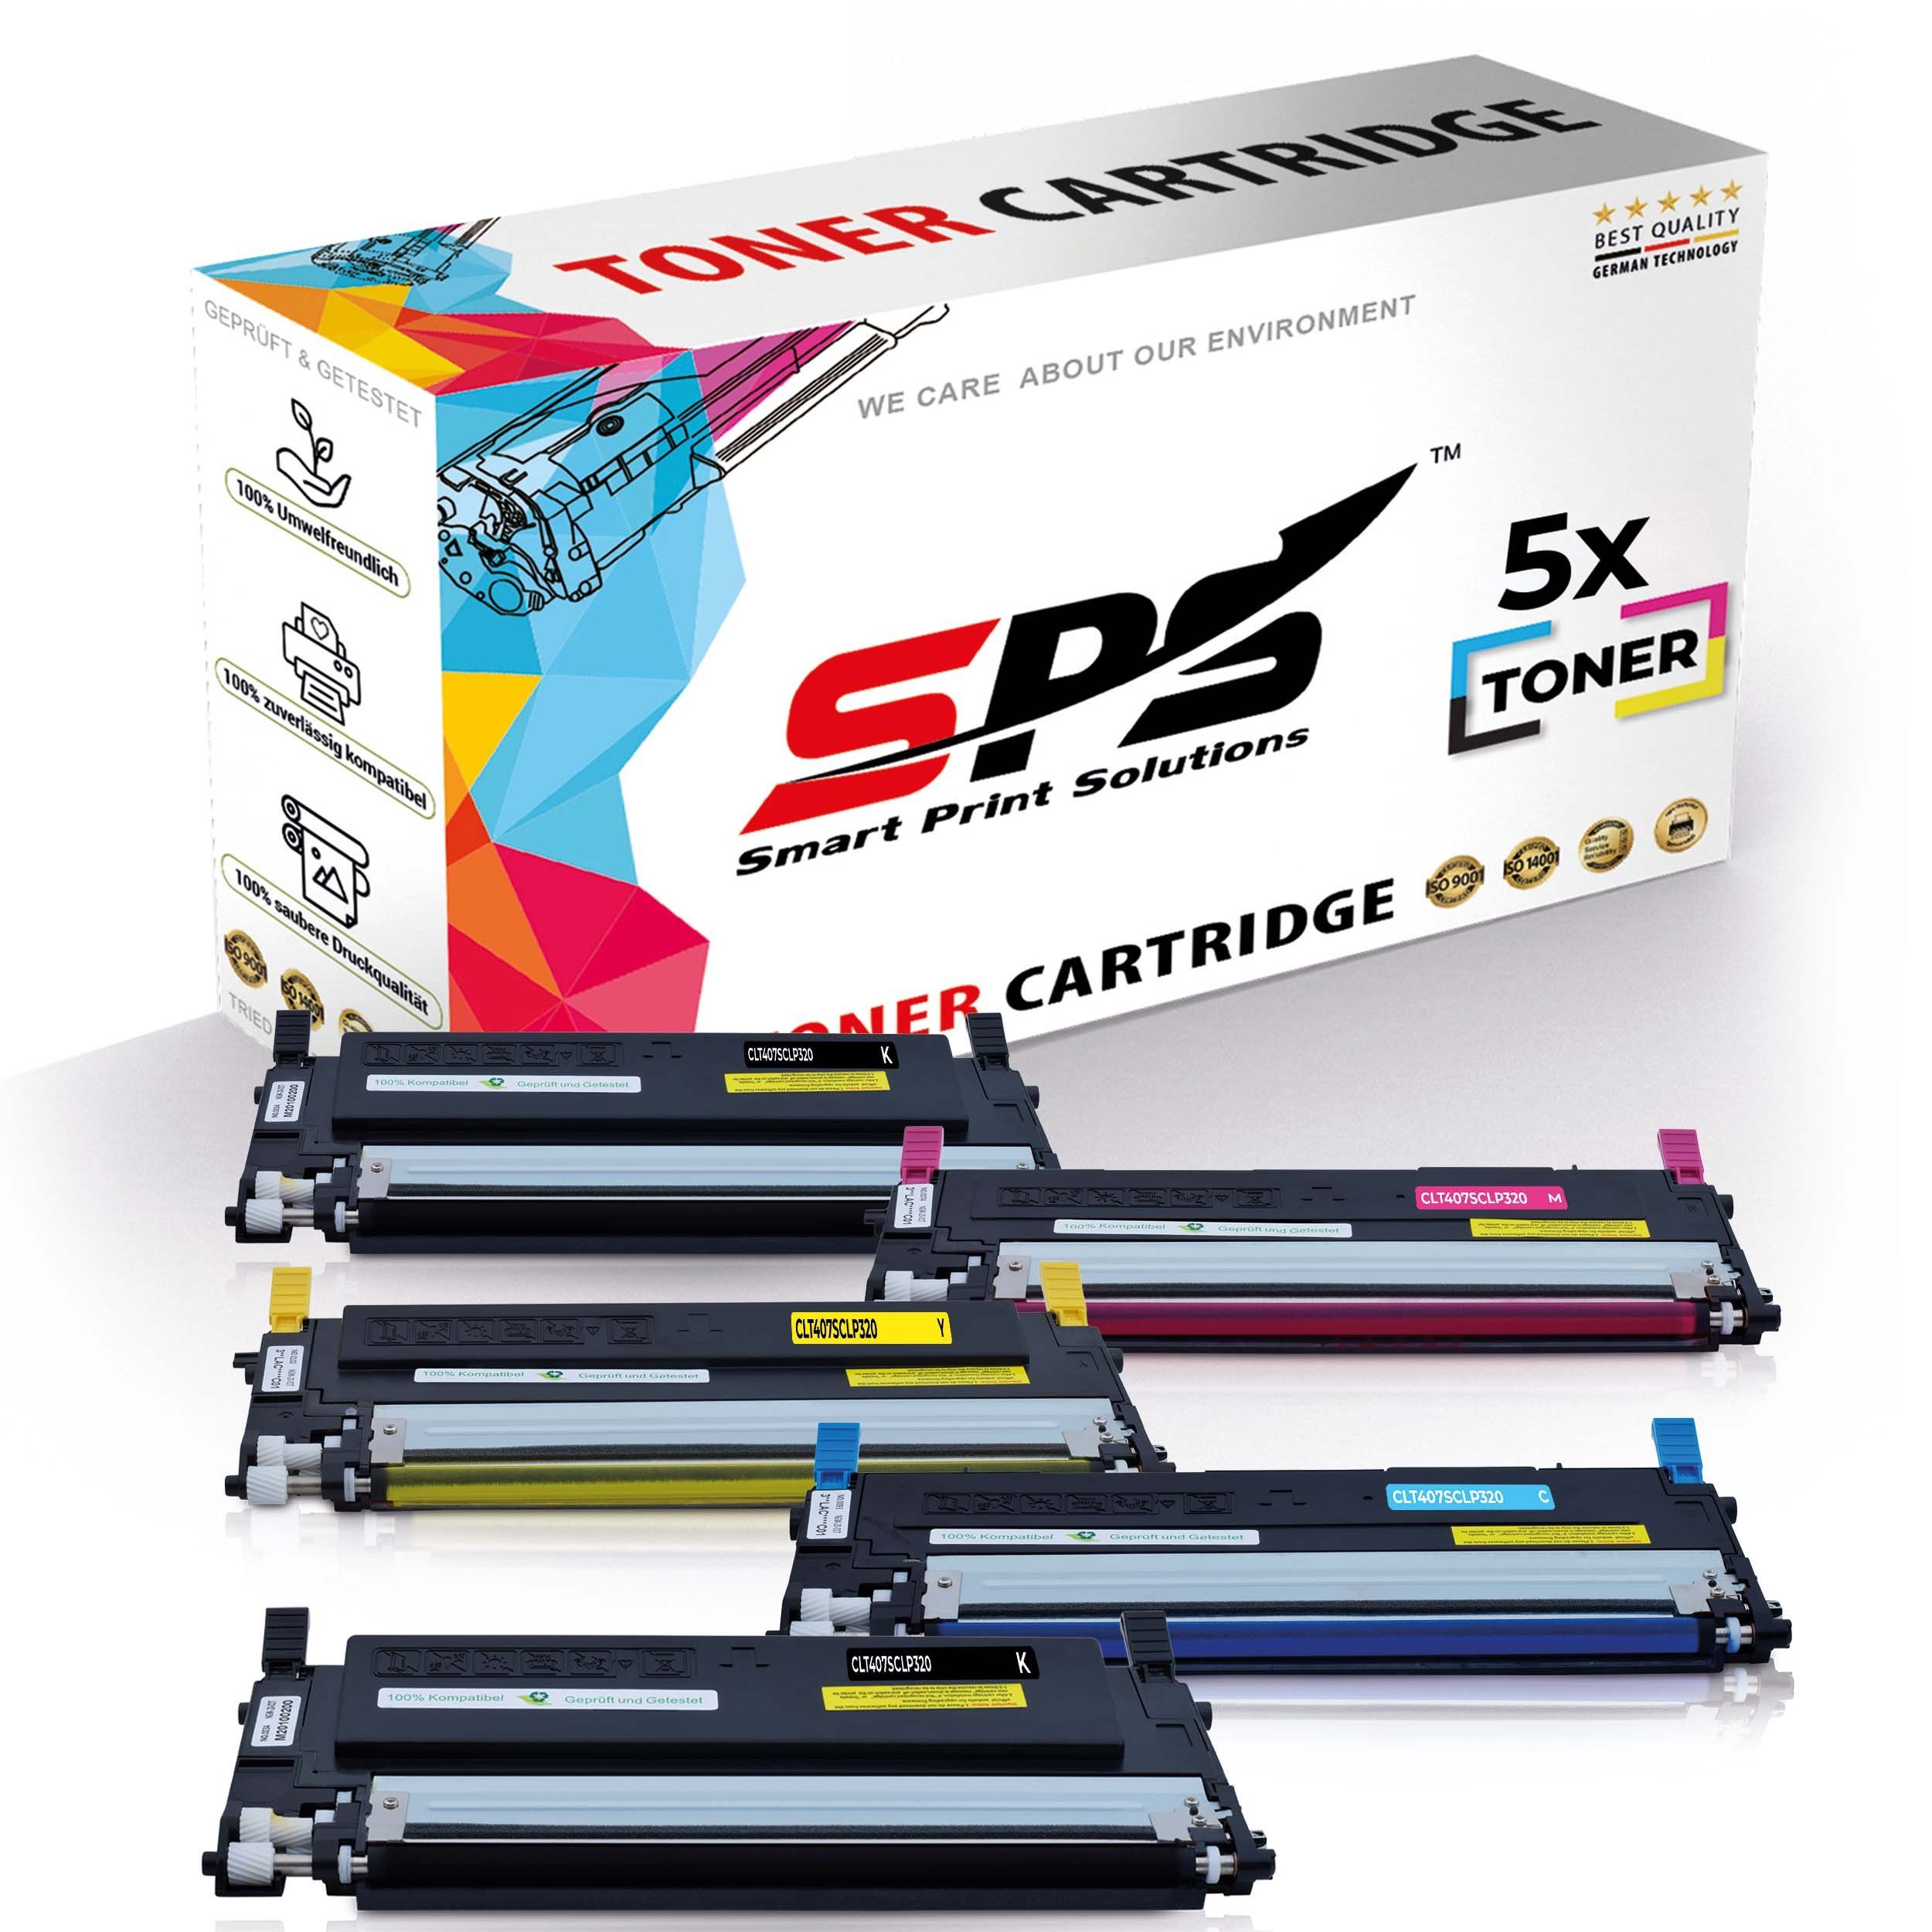 SPS Tonerkartusche Kompatibel für Samsung C407 Pack) CLX-3185 CLT-C407S, (5er